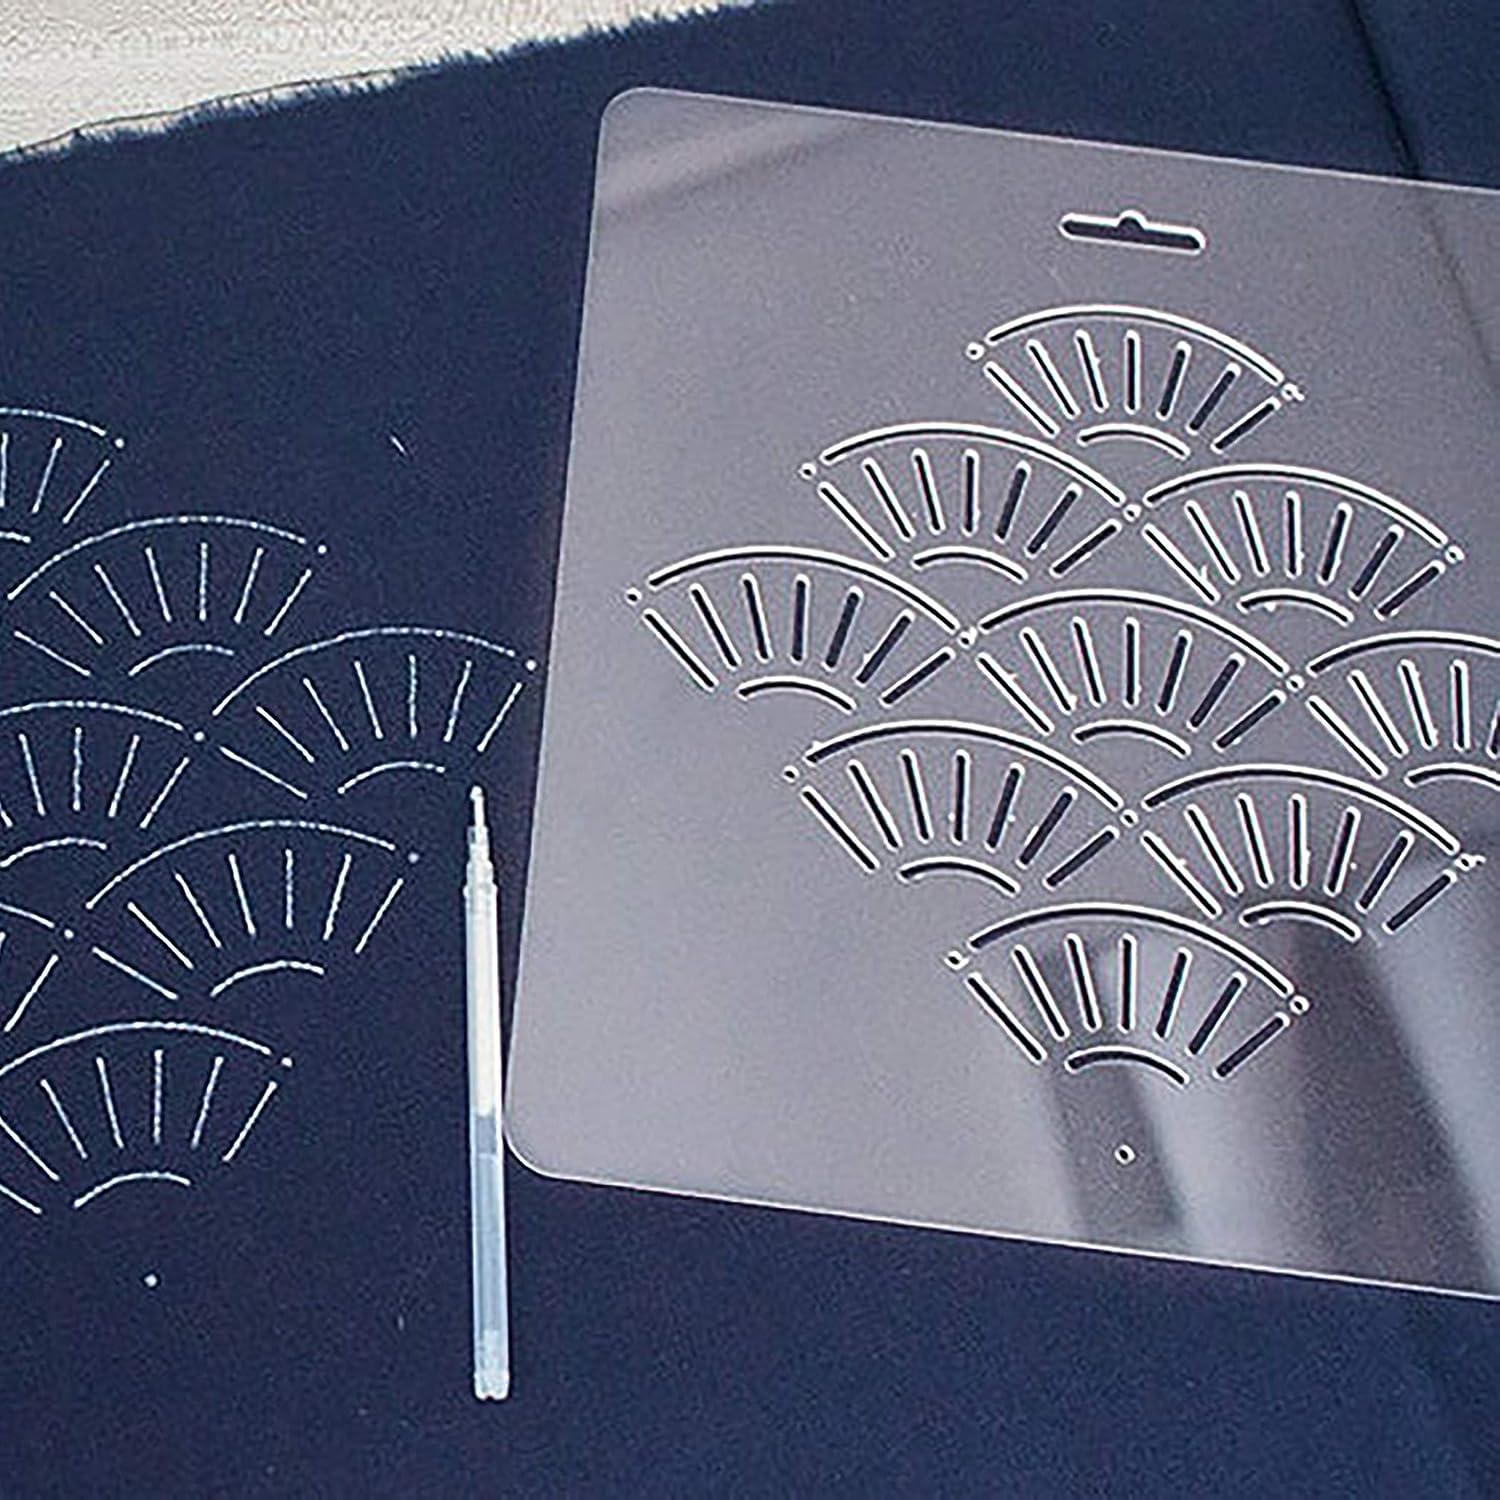 Acrylic Stencil for Sashiko Stencil Quilting Stencil 